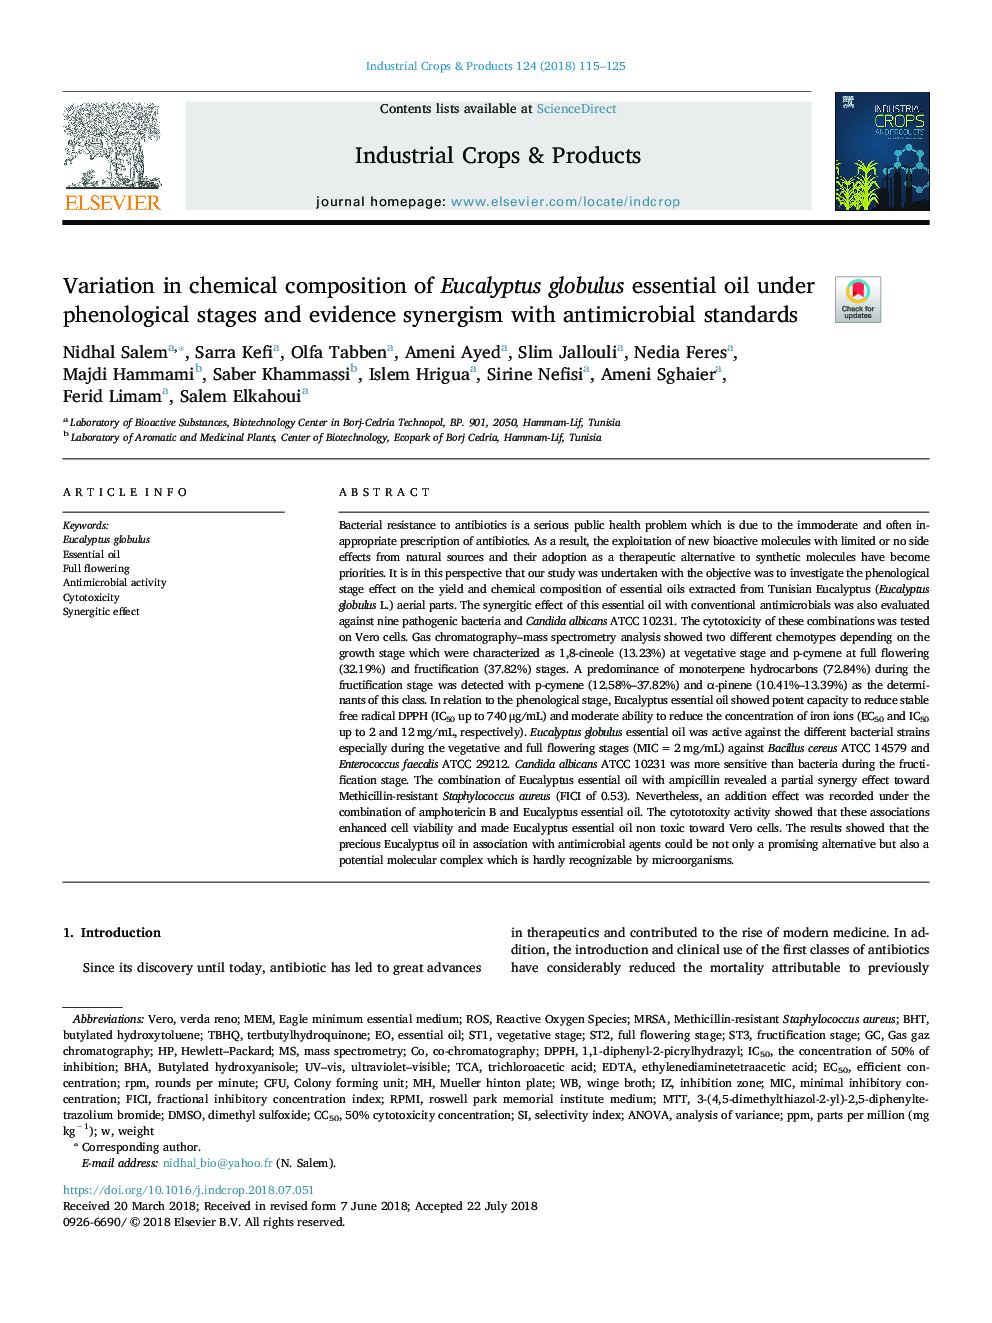 تغییرات در ترکیب شیمیایی اسانس اکالیپتوس گلوبولوس در مراحل فنولوژیک و هم افزایی شواهد با استانداردهای ضد 